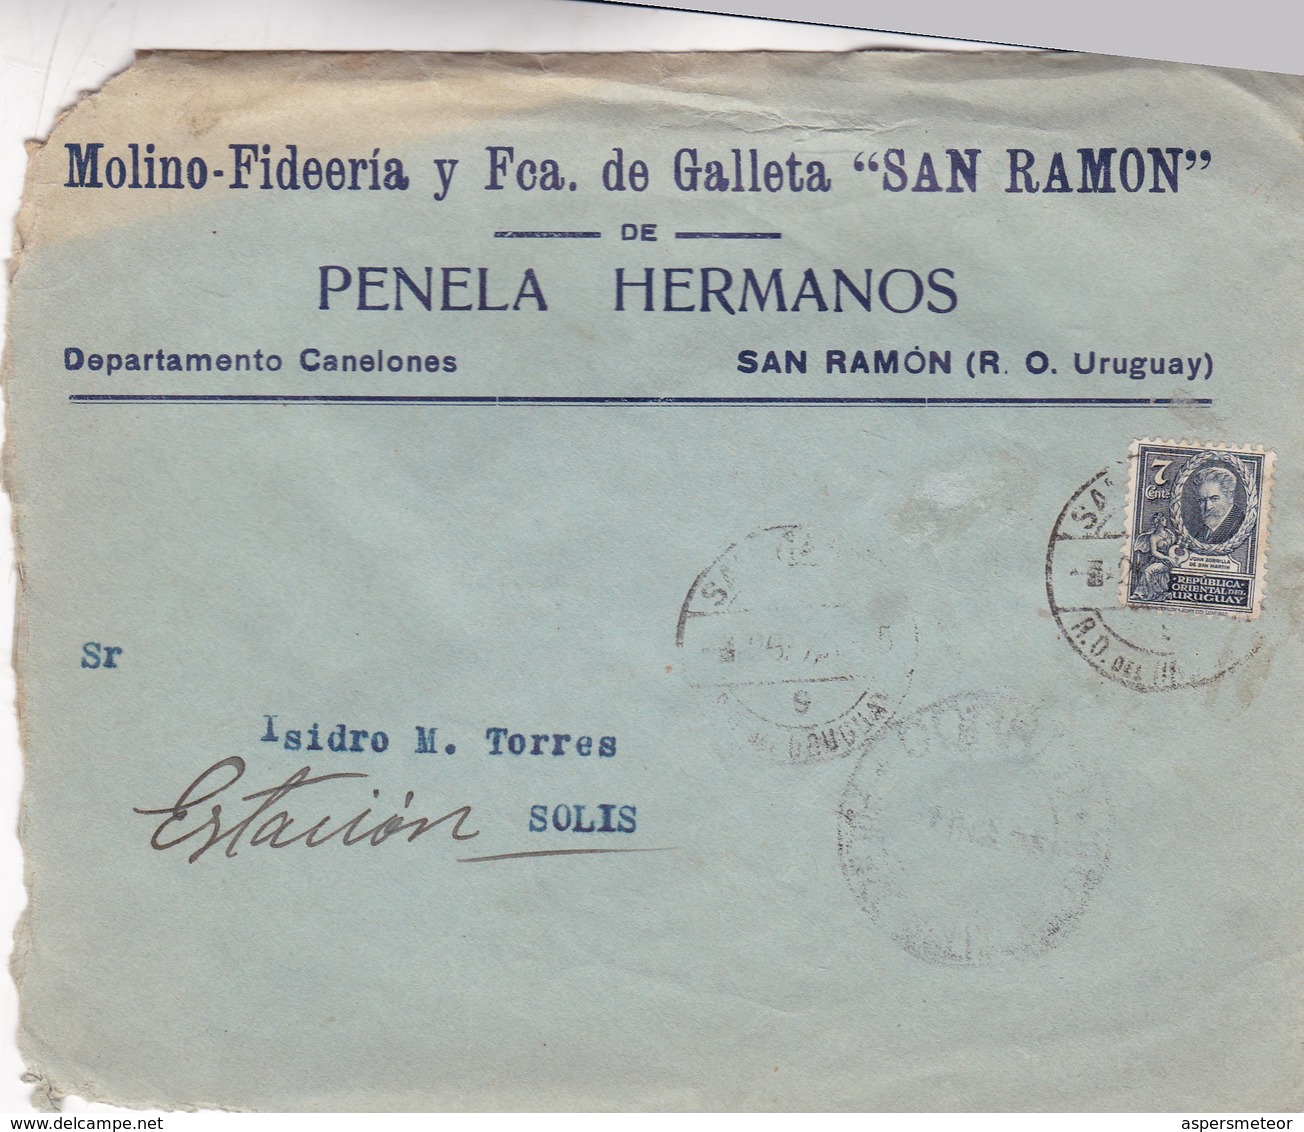 MOLINO FIDERIA Y FCA GALLETA SAN RAMON - COMMERCIAL ENVELOPE CIRCULEE 1955 URUGUAY - BLEUP - Uruguay